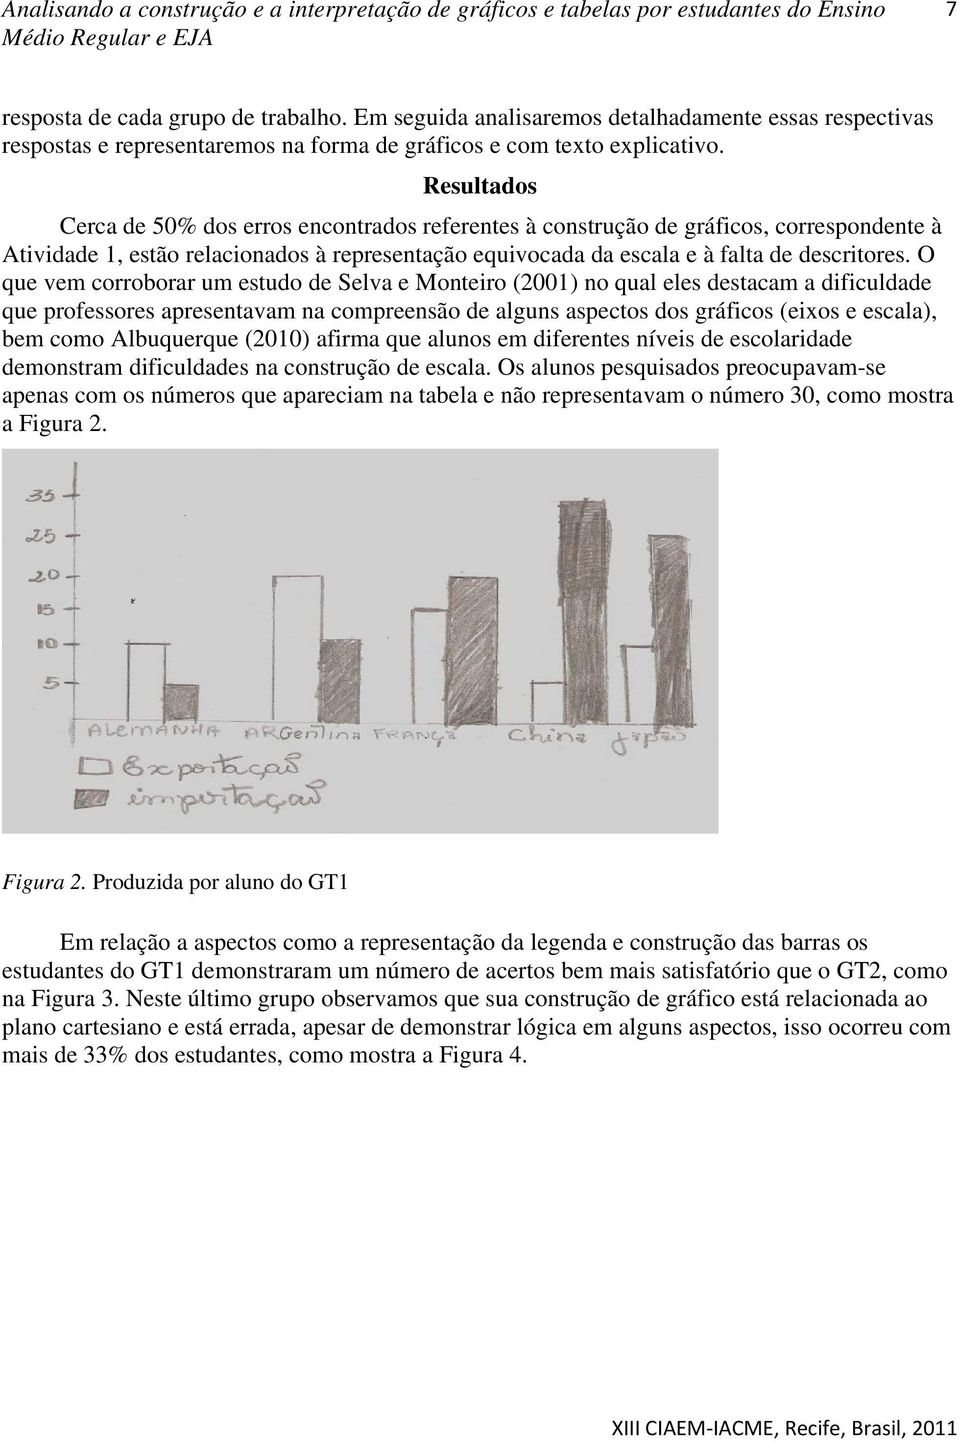 O que vem corroborar um estudo de Selva e Monteiro (2001) no qual eles destacam a dificuldade que professores apresentavam na compreensão de alguns aspectos dos gráficos (eixos e escala), bem como